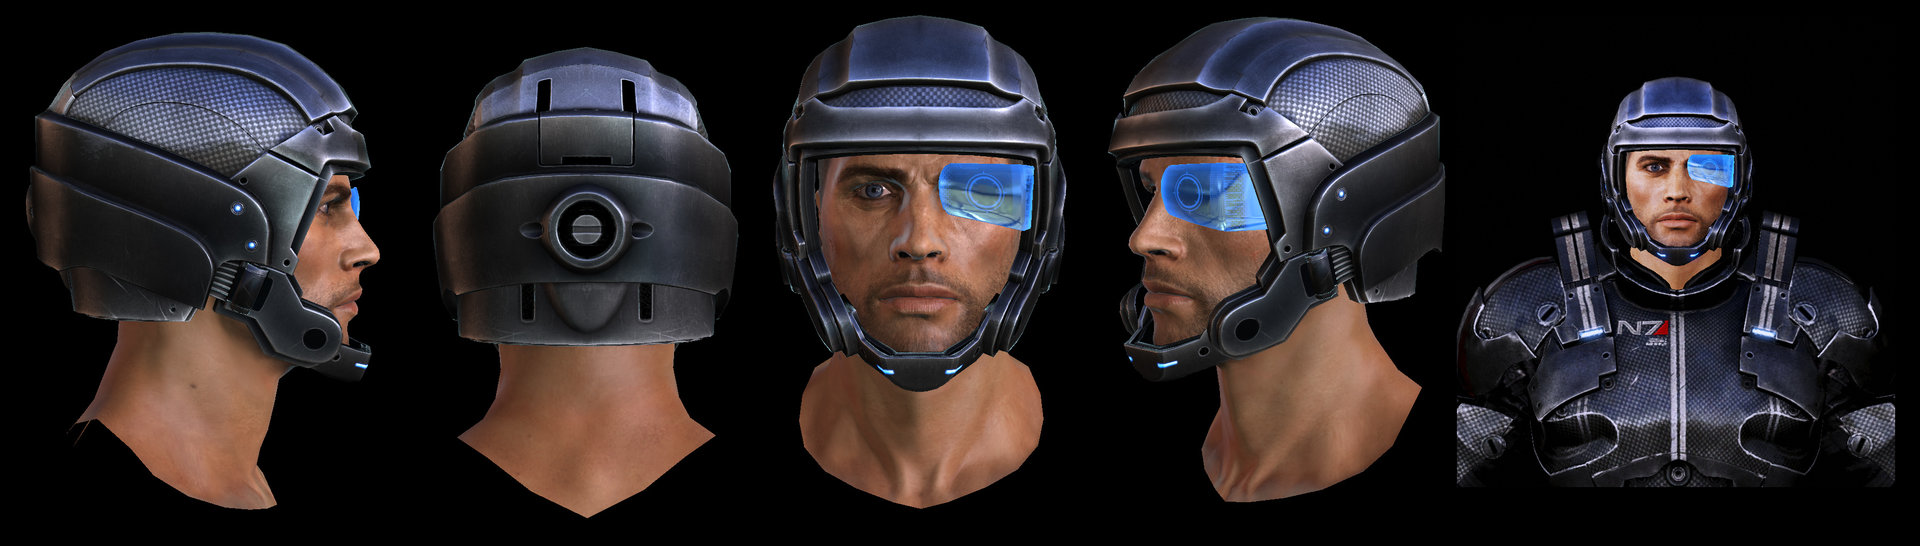 Rodrigue Pralier - Mass Effect 2 Assets - guns and helmets